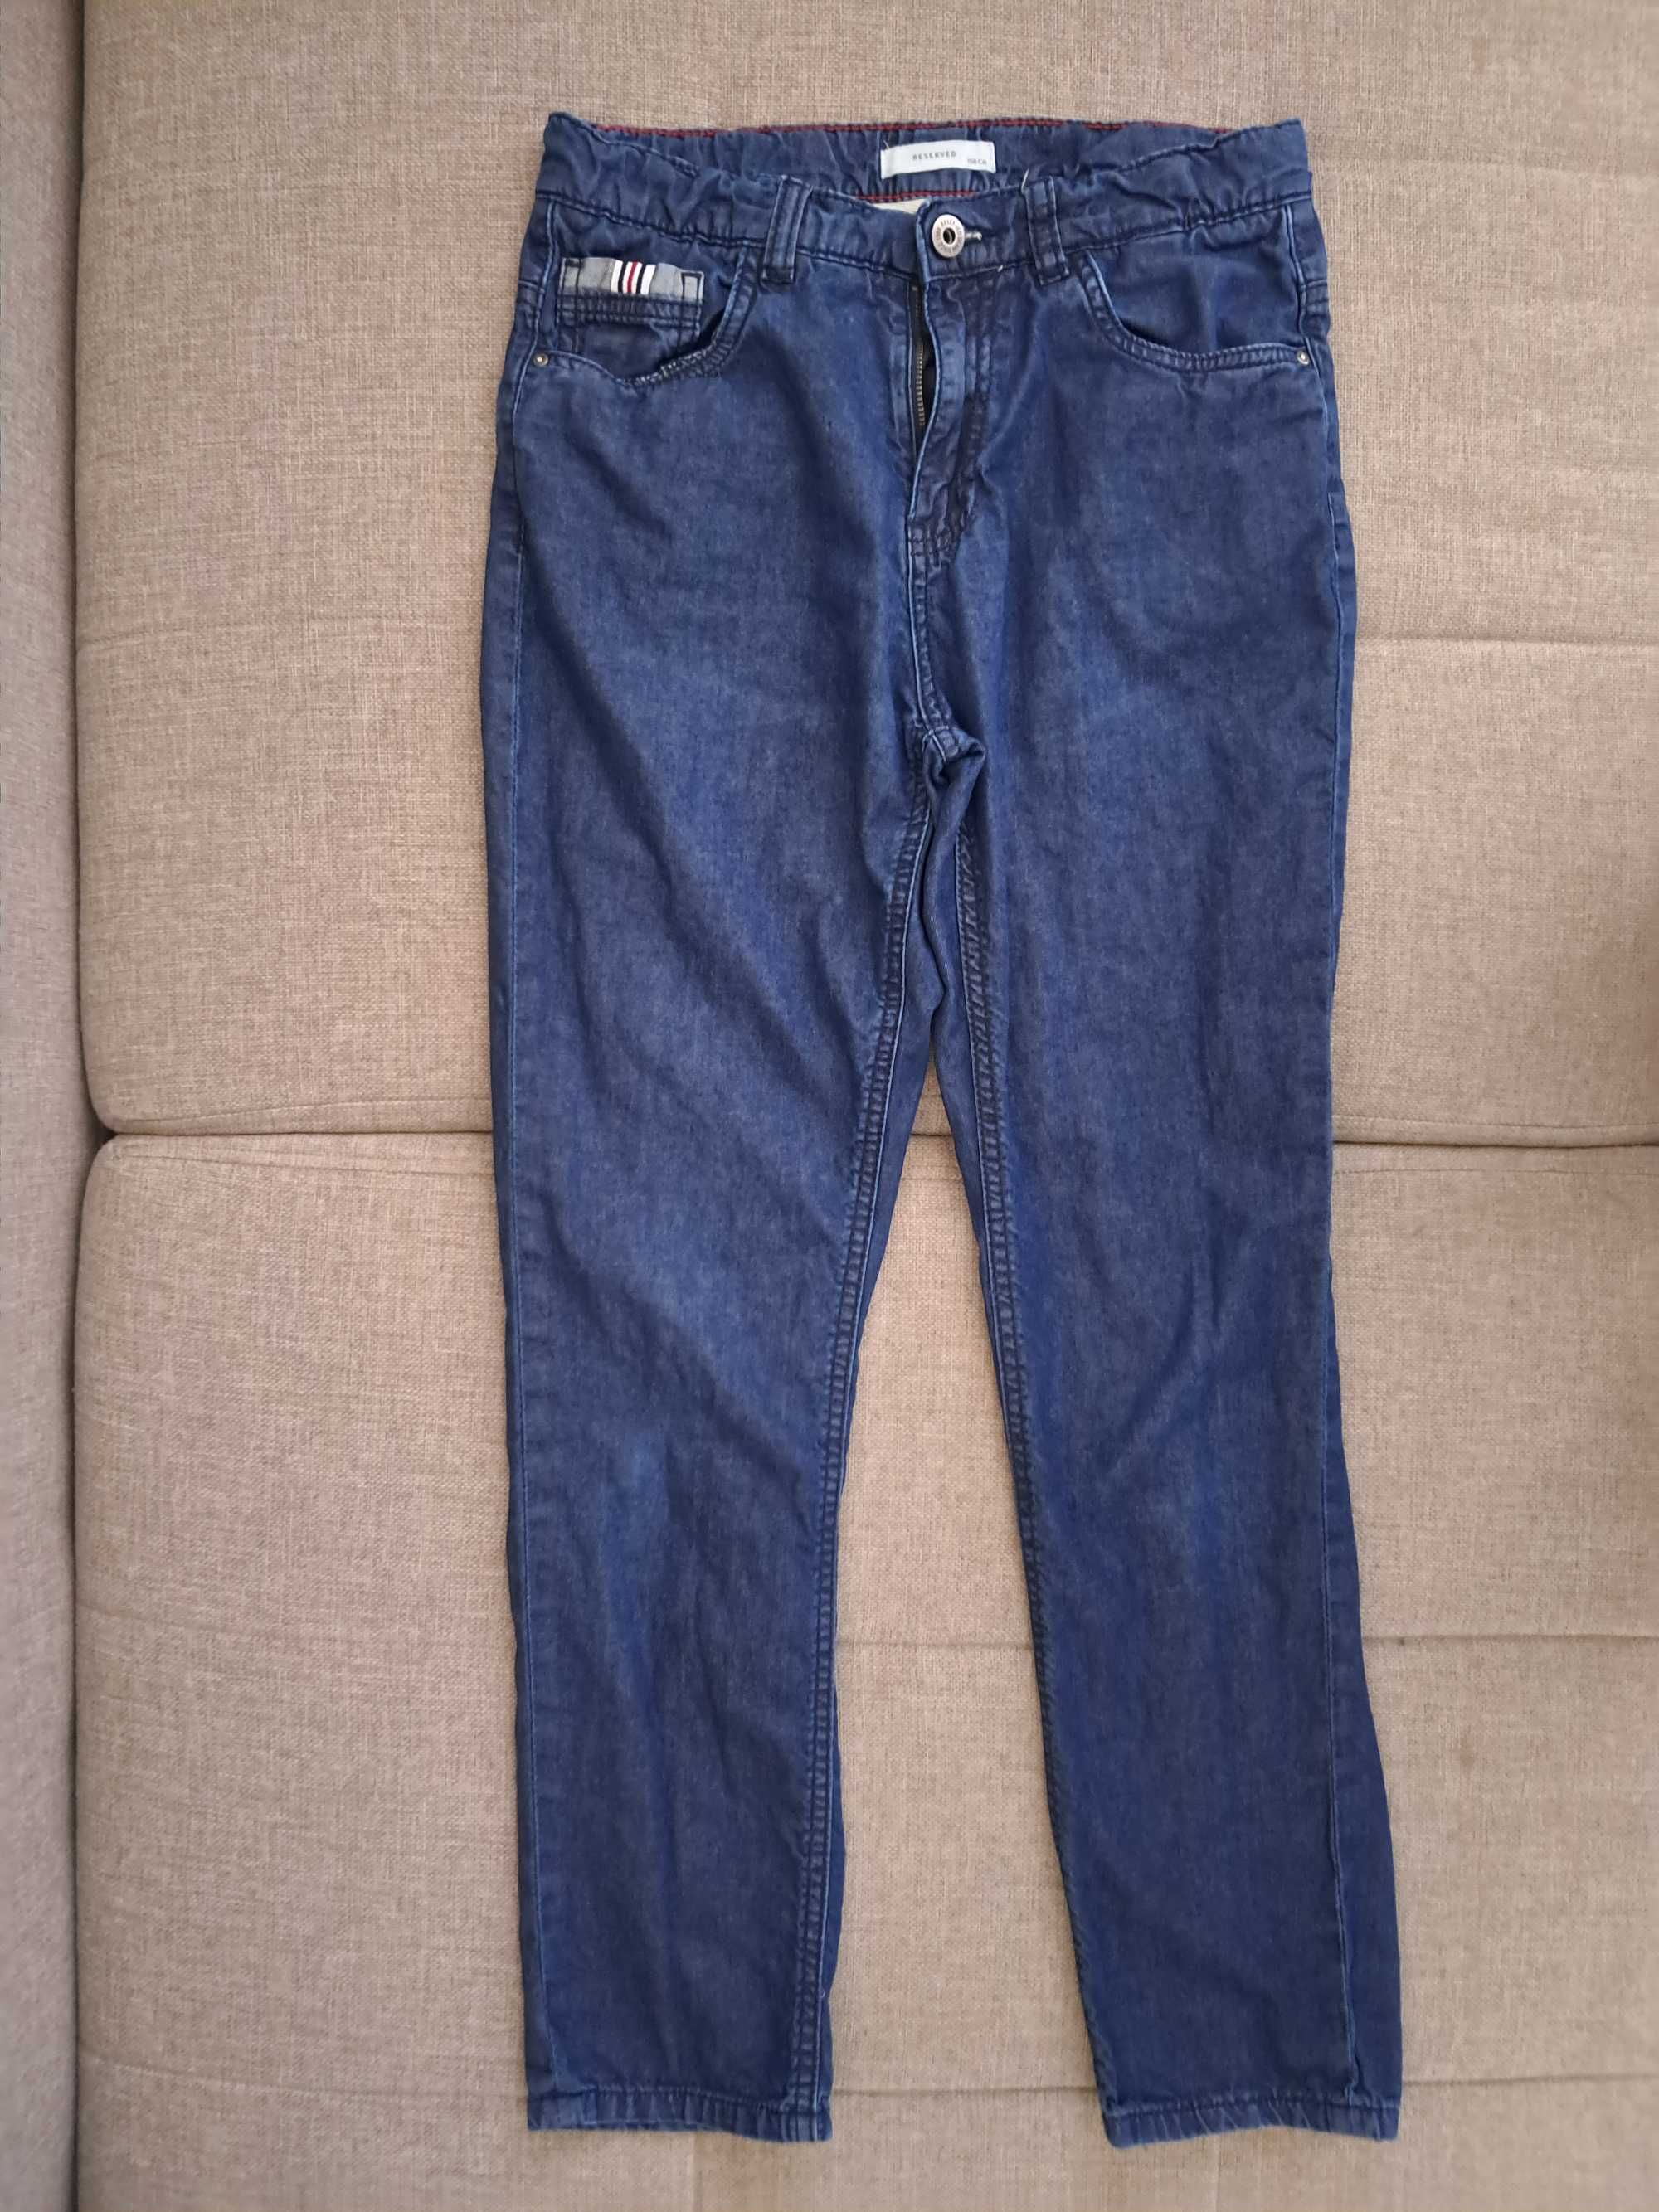 JEANS spodnie jeansowe RESERVED, chłopięce, r. 158cm, stan BDB